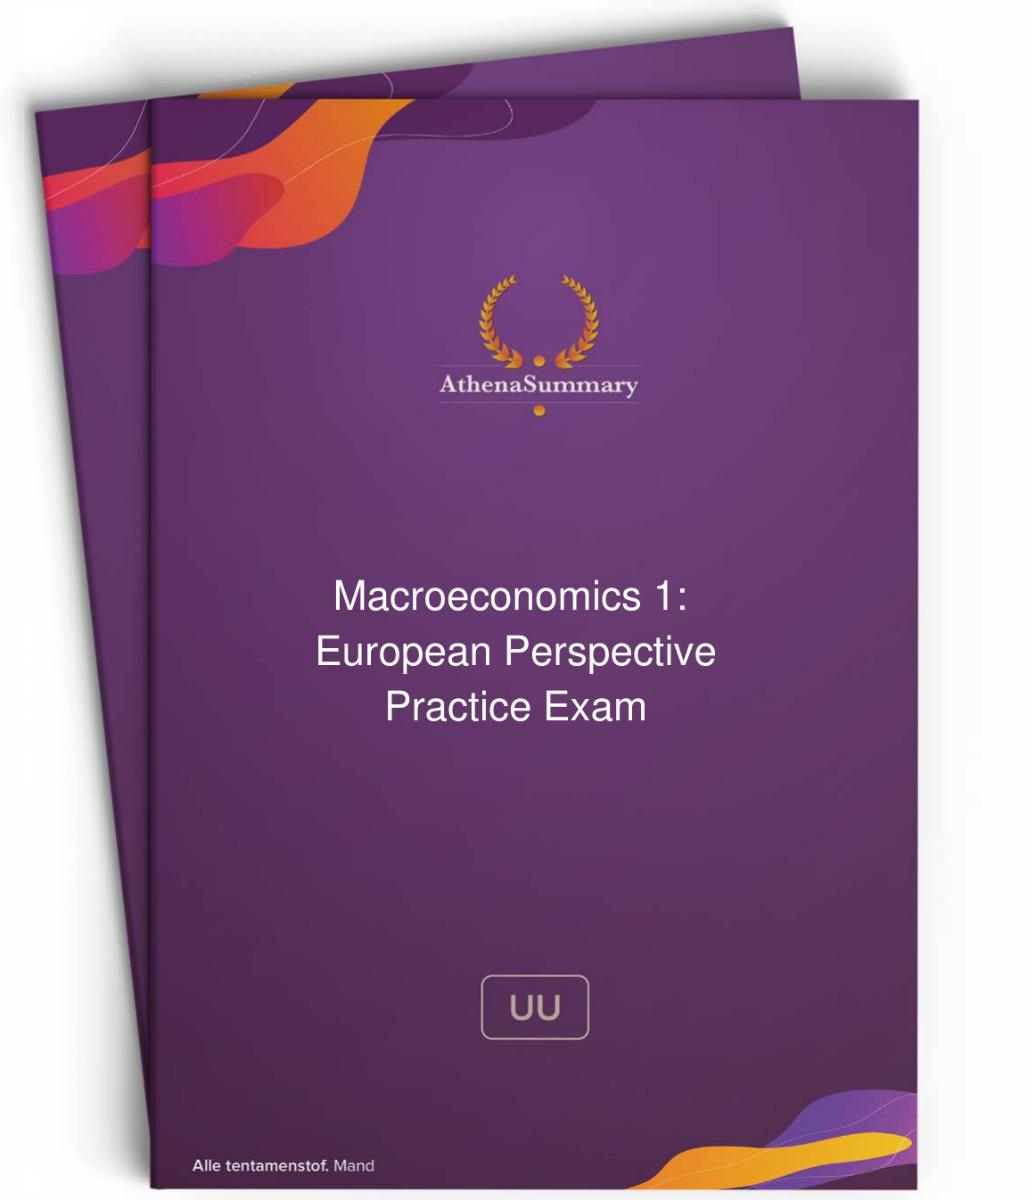 Macroeconomics 1 Practice Exam